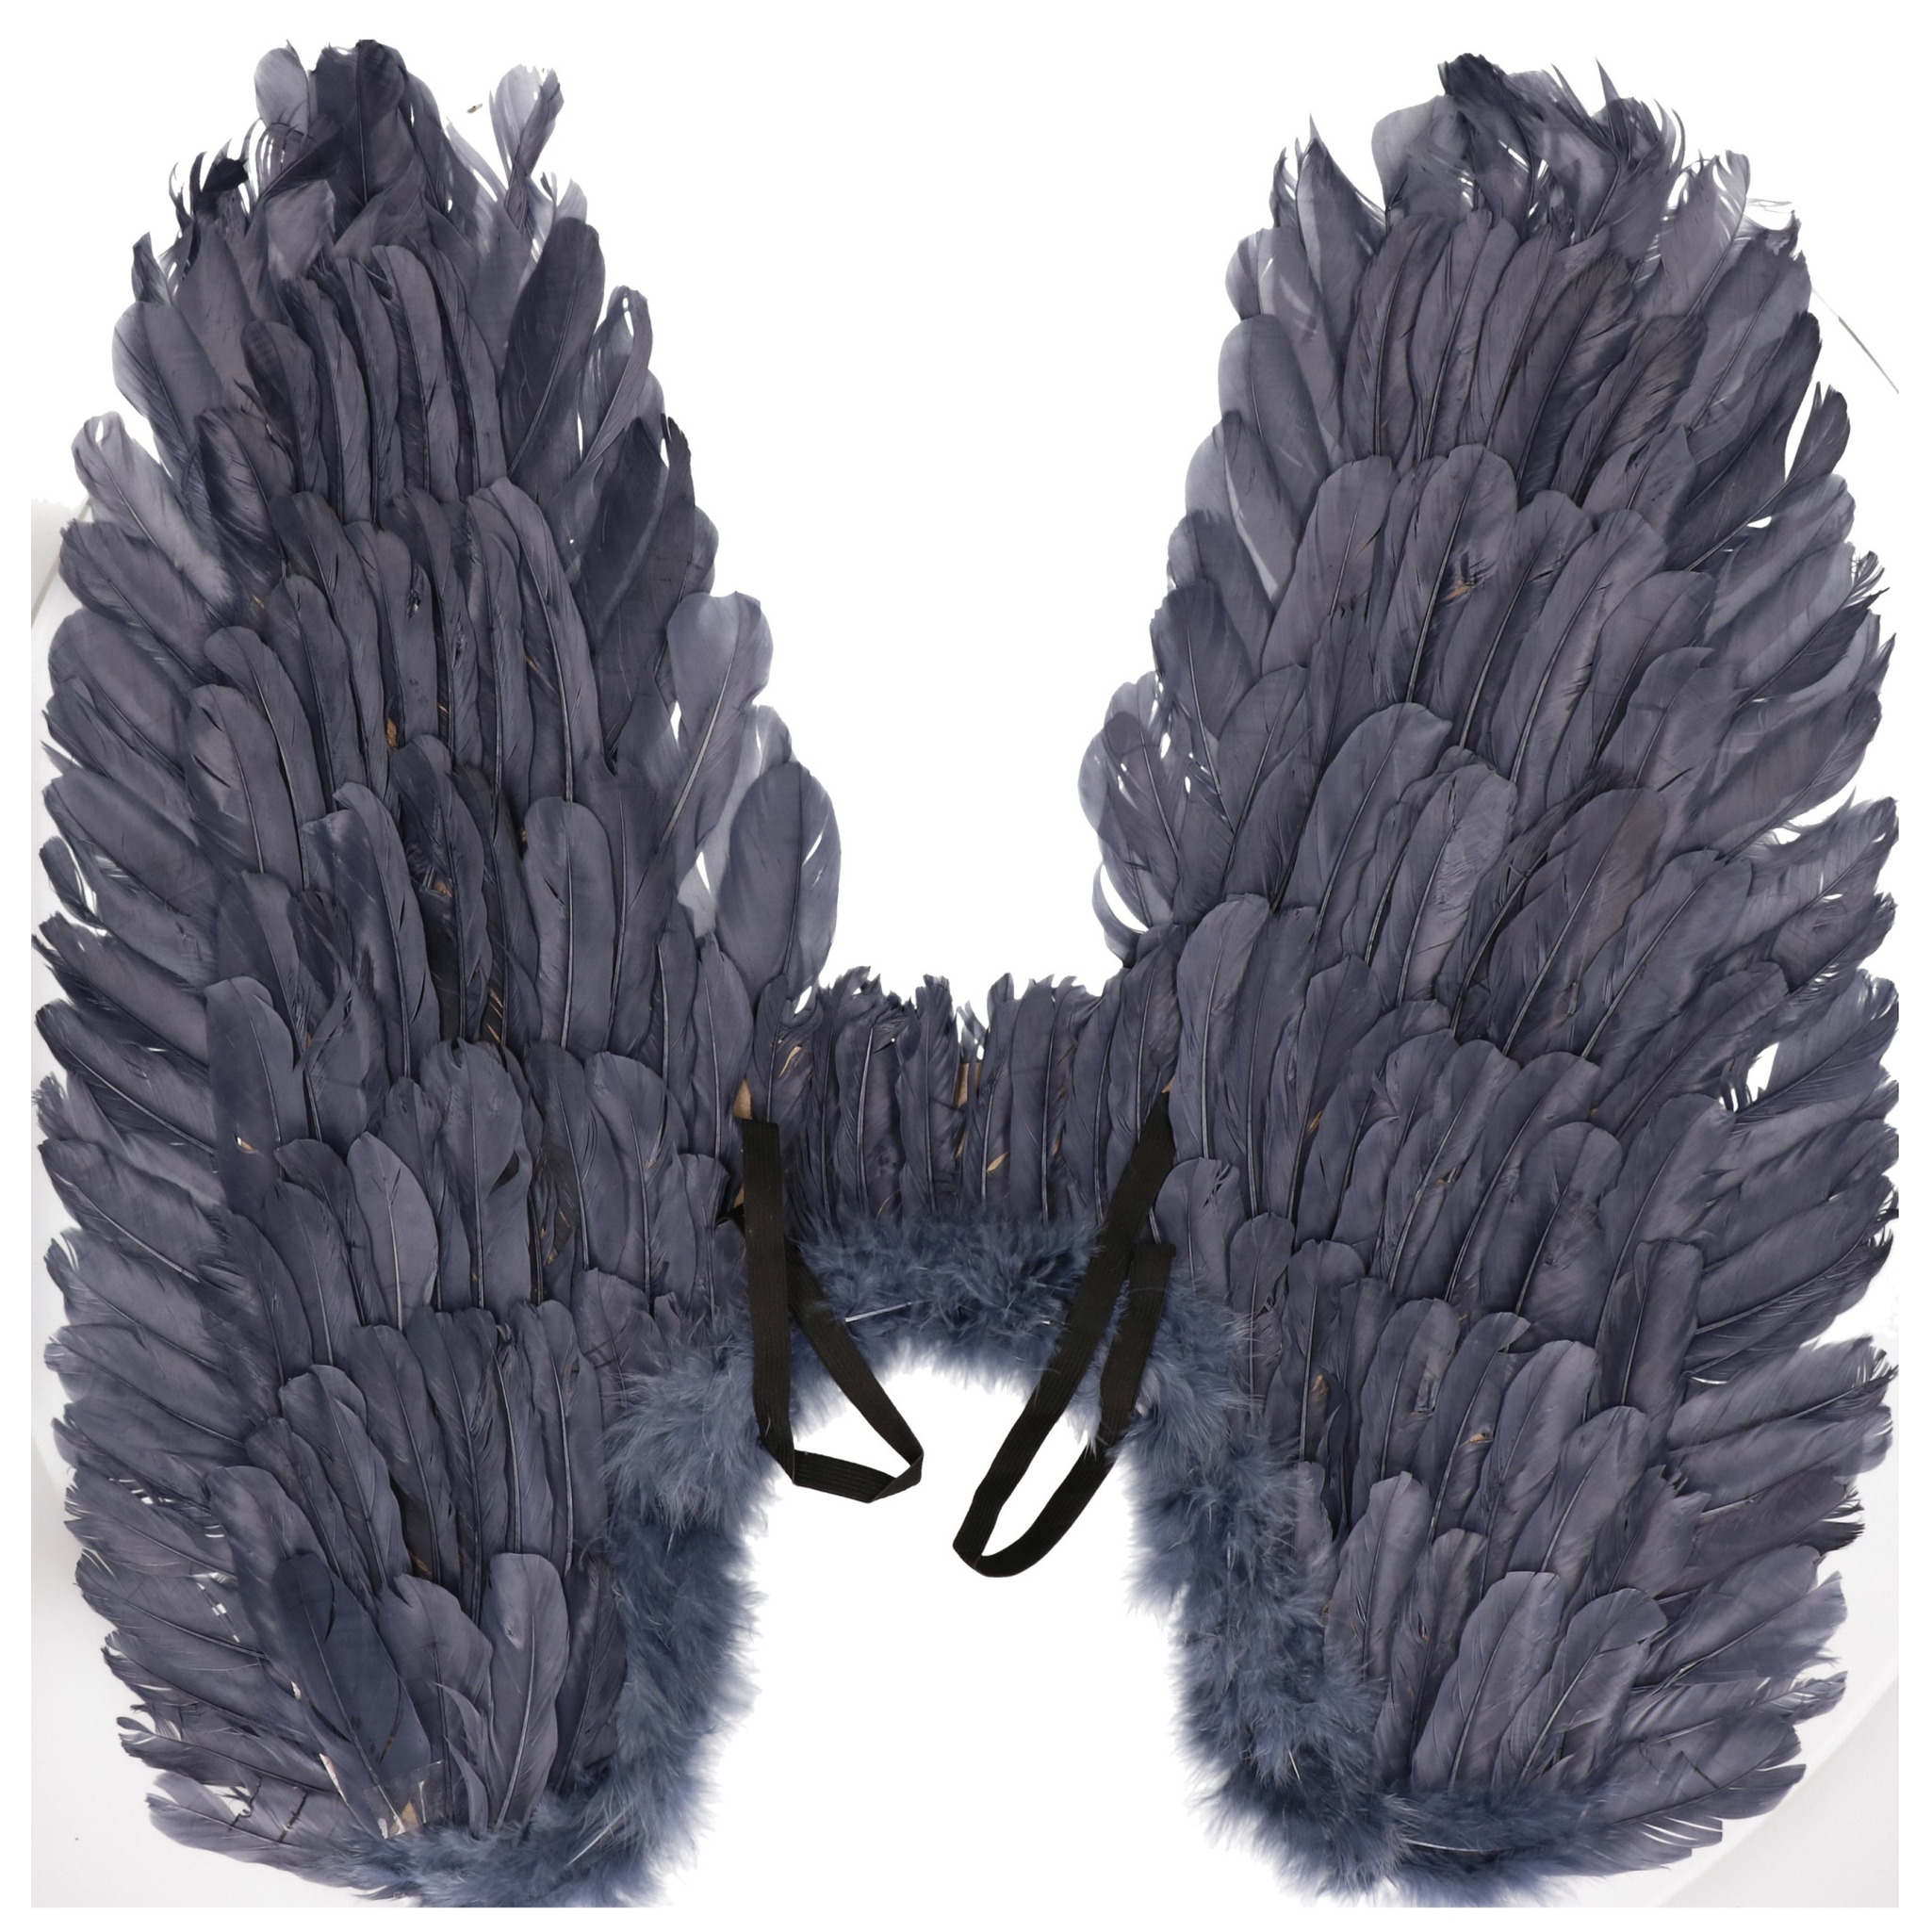 Blauw grijze vleugels met veren 65 x 60 cm groot